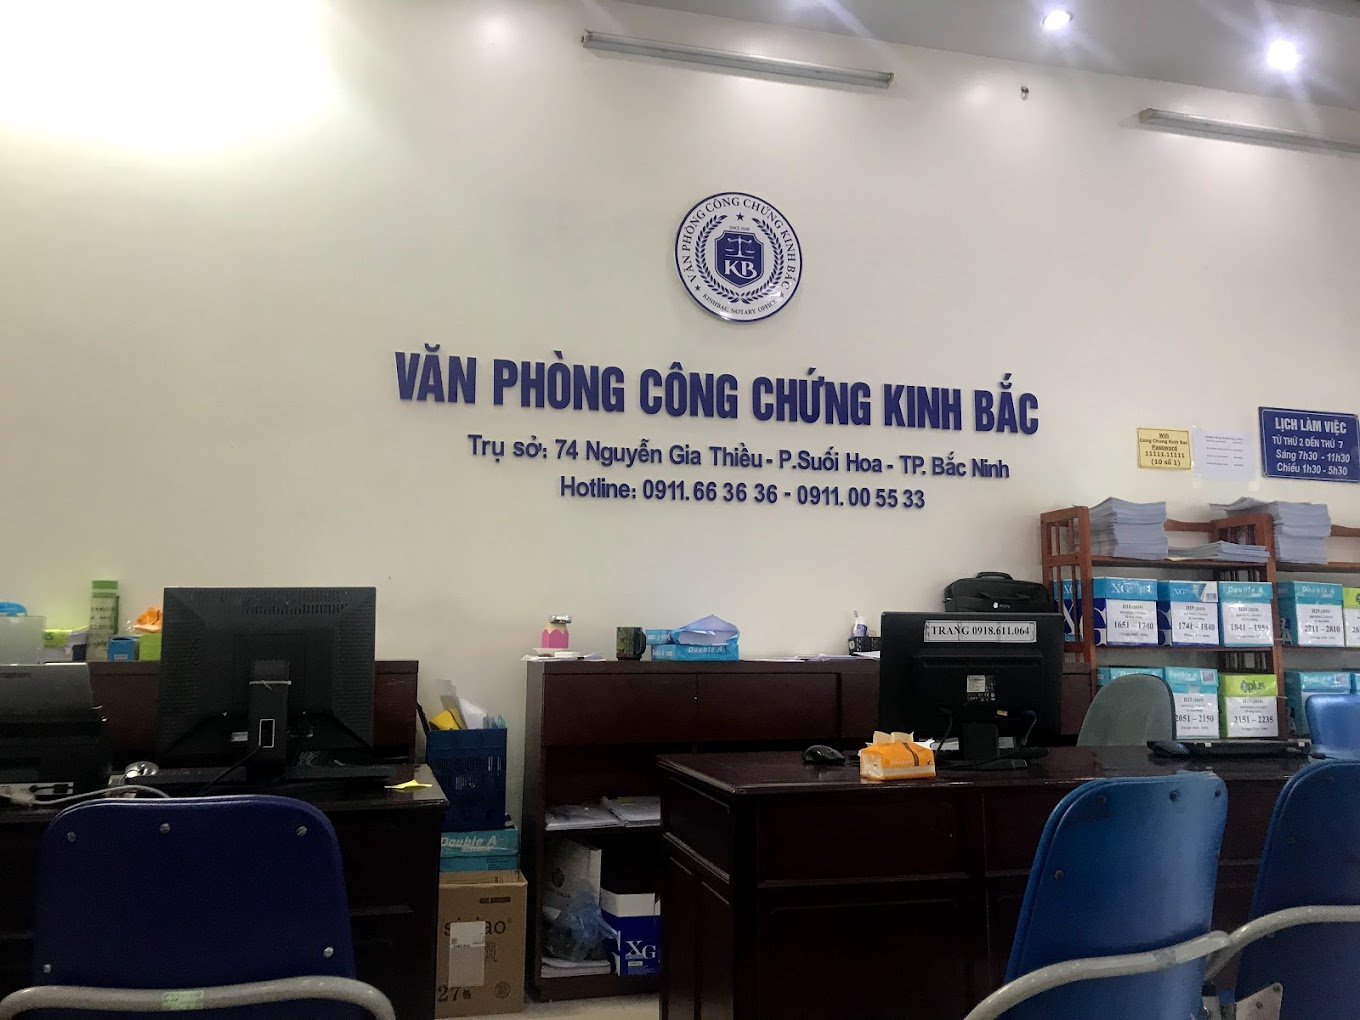 Liên hệ Văn phòng công chứng Kinh Bắc thông tin địa chỉ số điện thoại